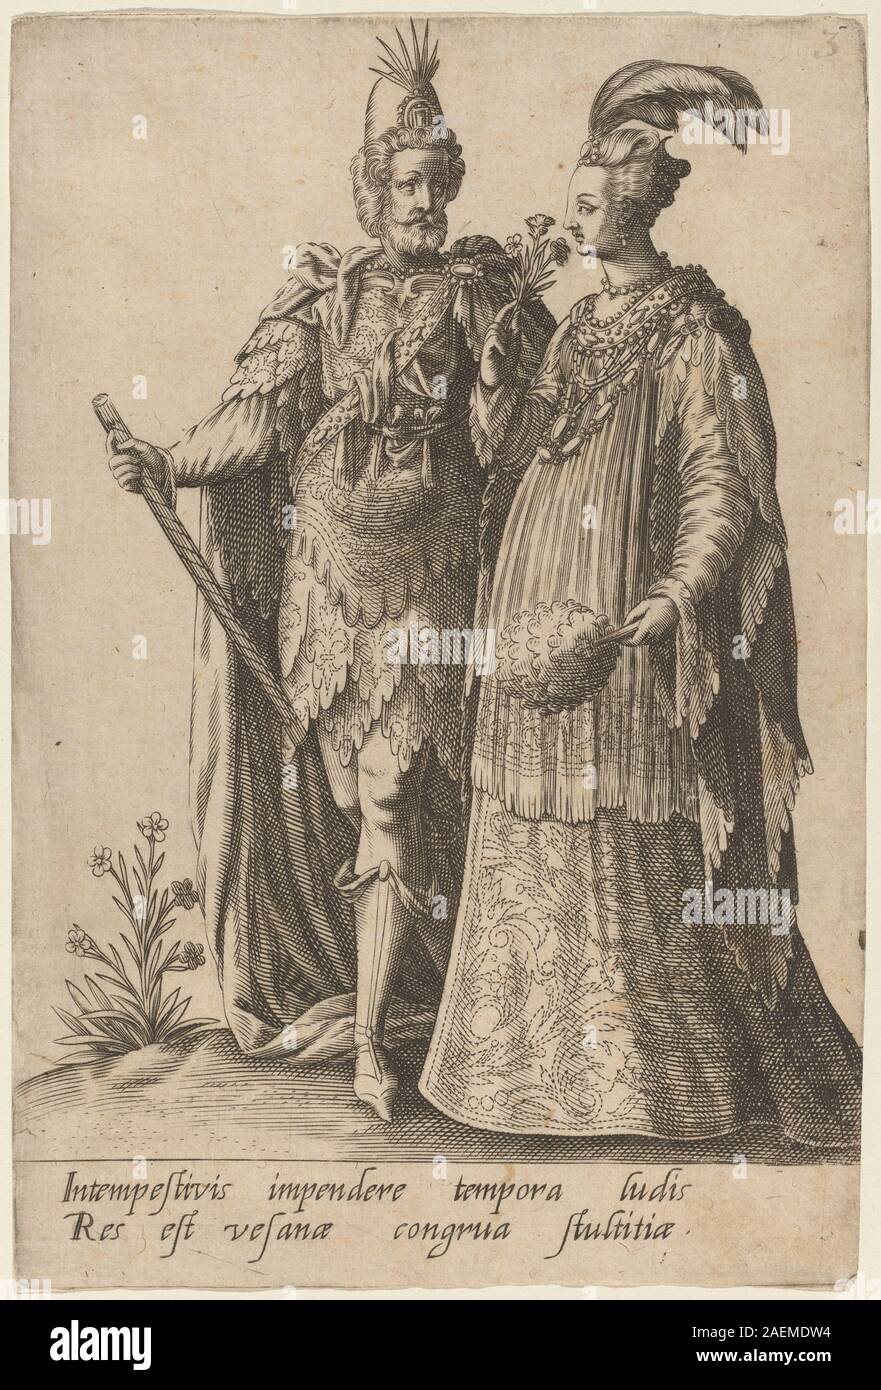 Robert Boissard after Jean-Jacques Boissard, Intempestivis impendere, 1597, Intempestivis impendere...; 1597 date Stock Photo